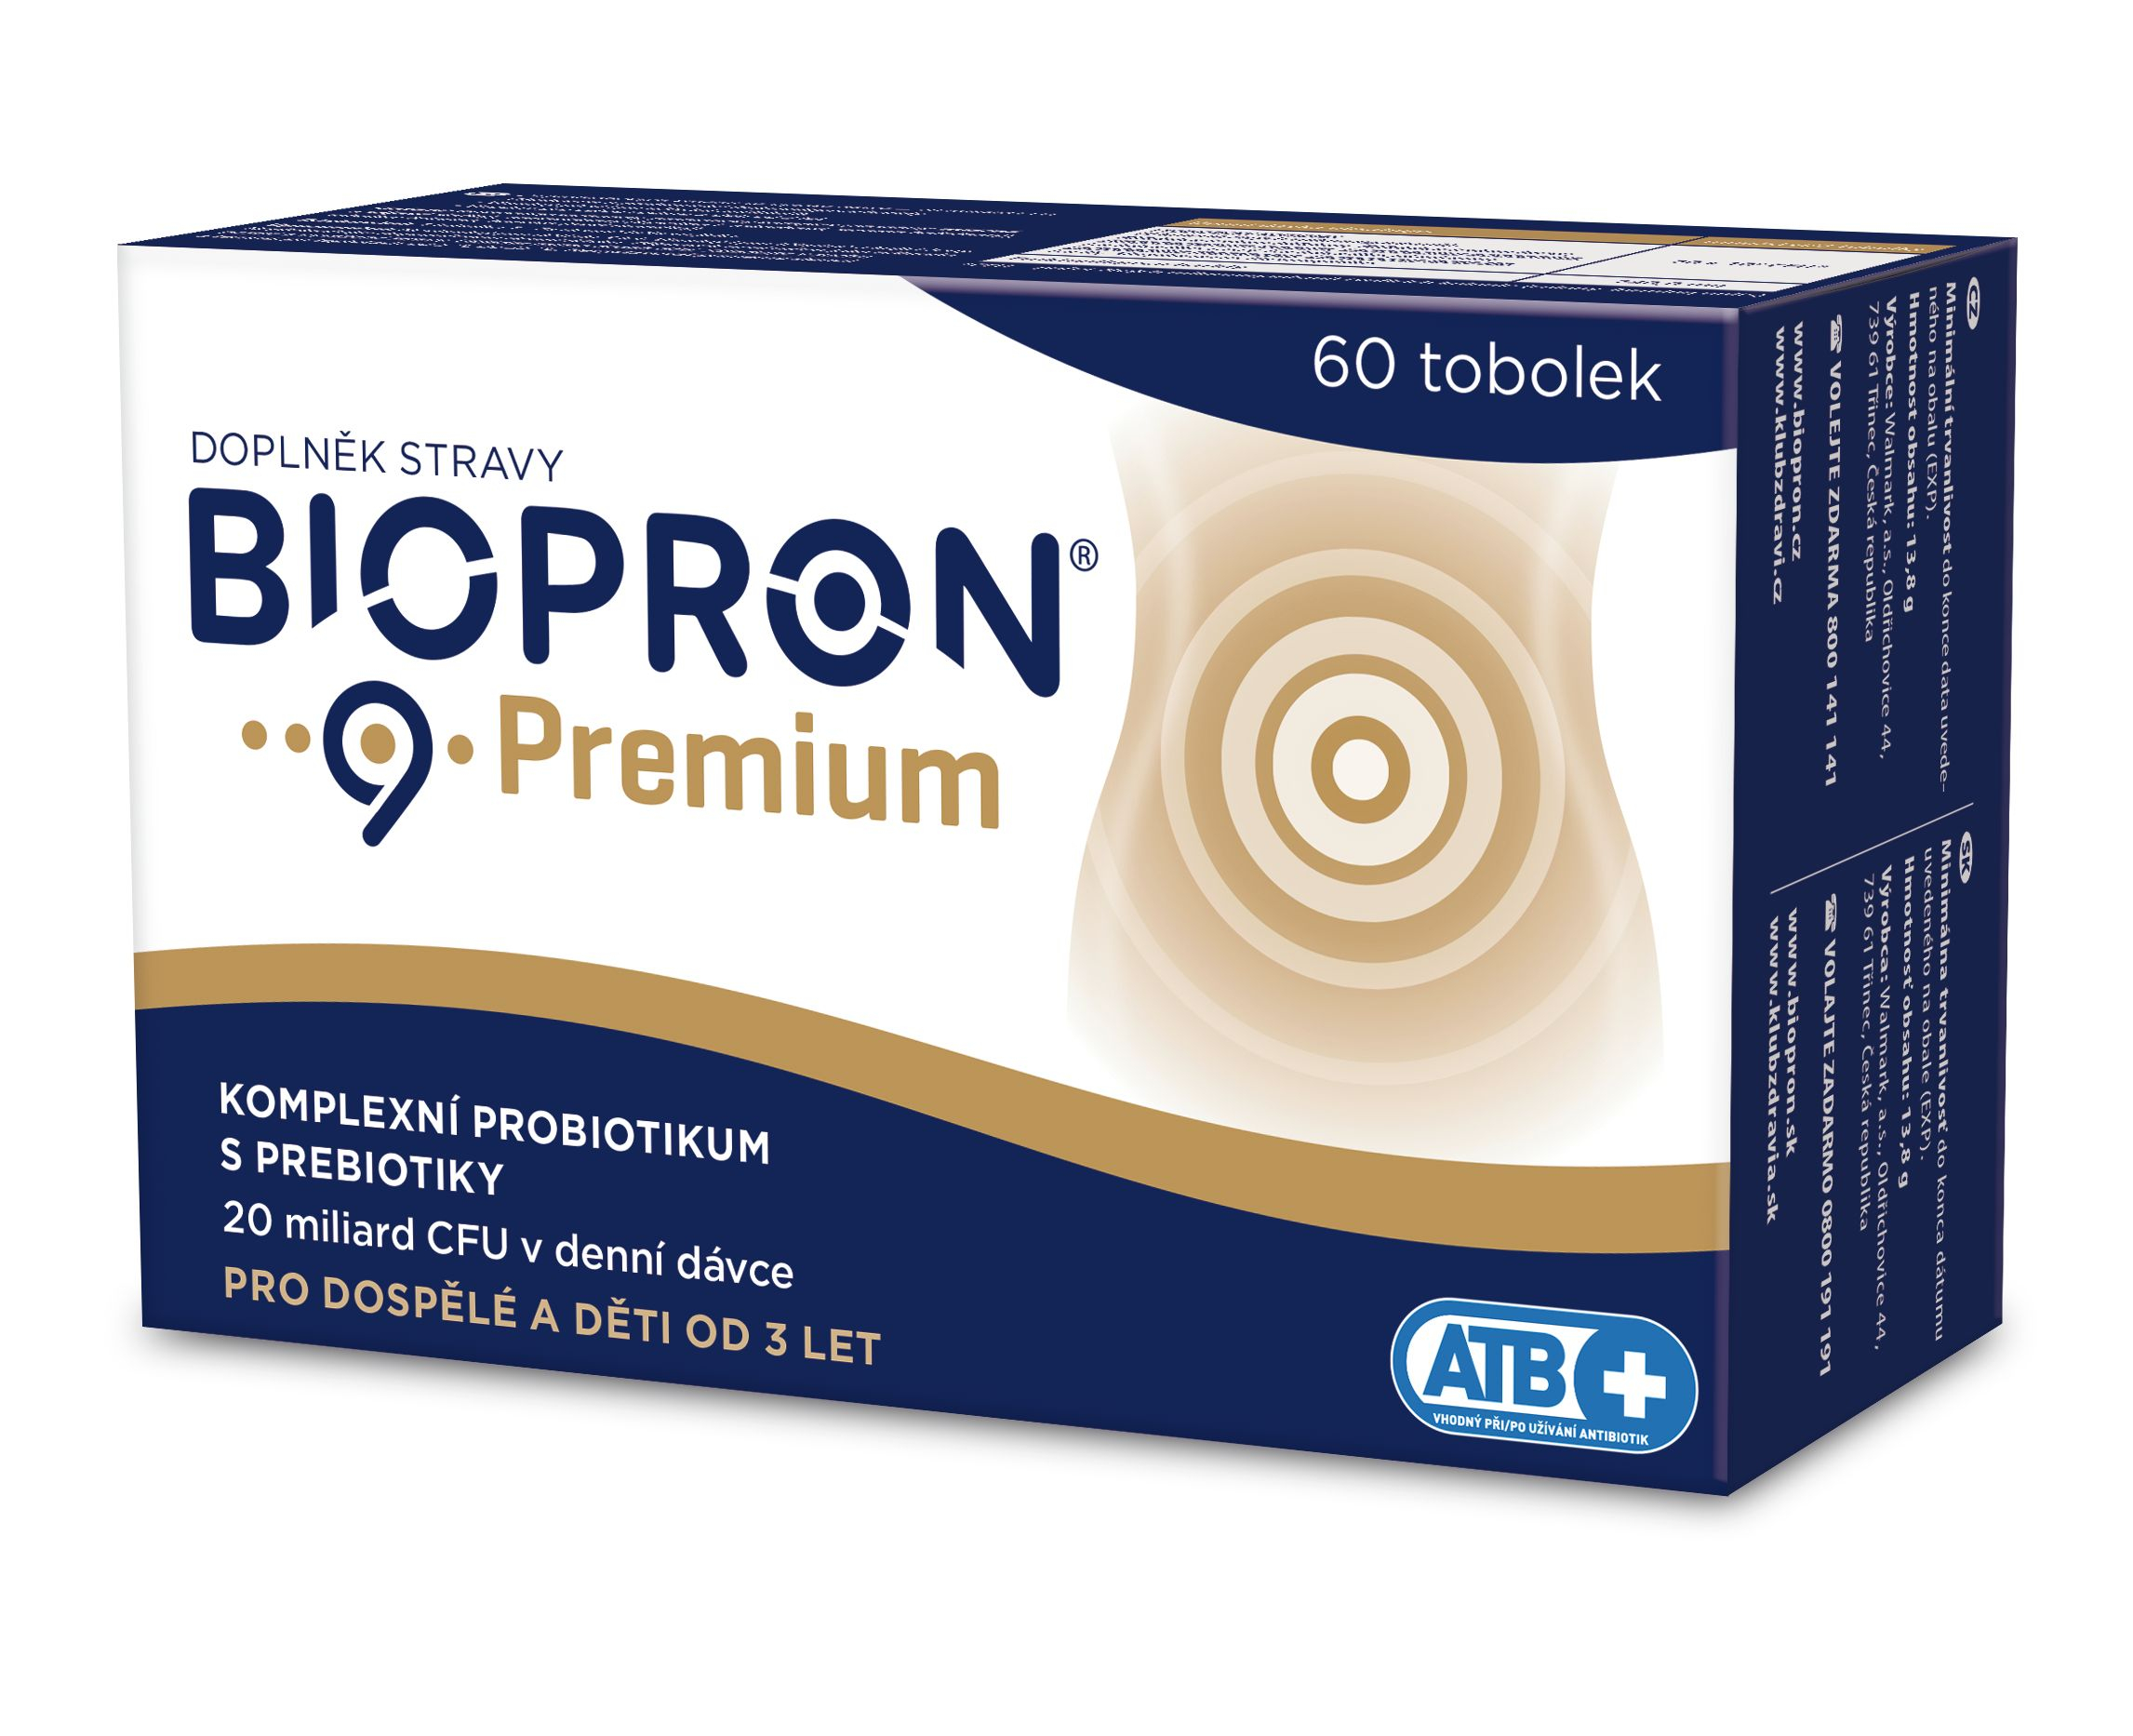 Biopron 9 Premium 60 tobolek Biopron